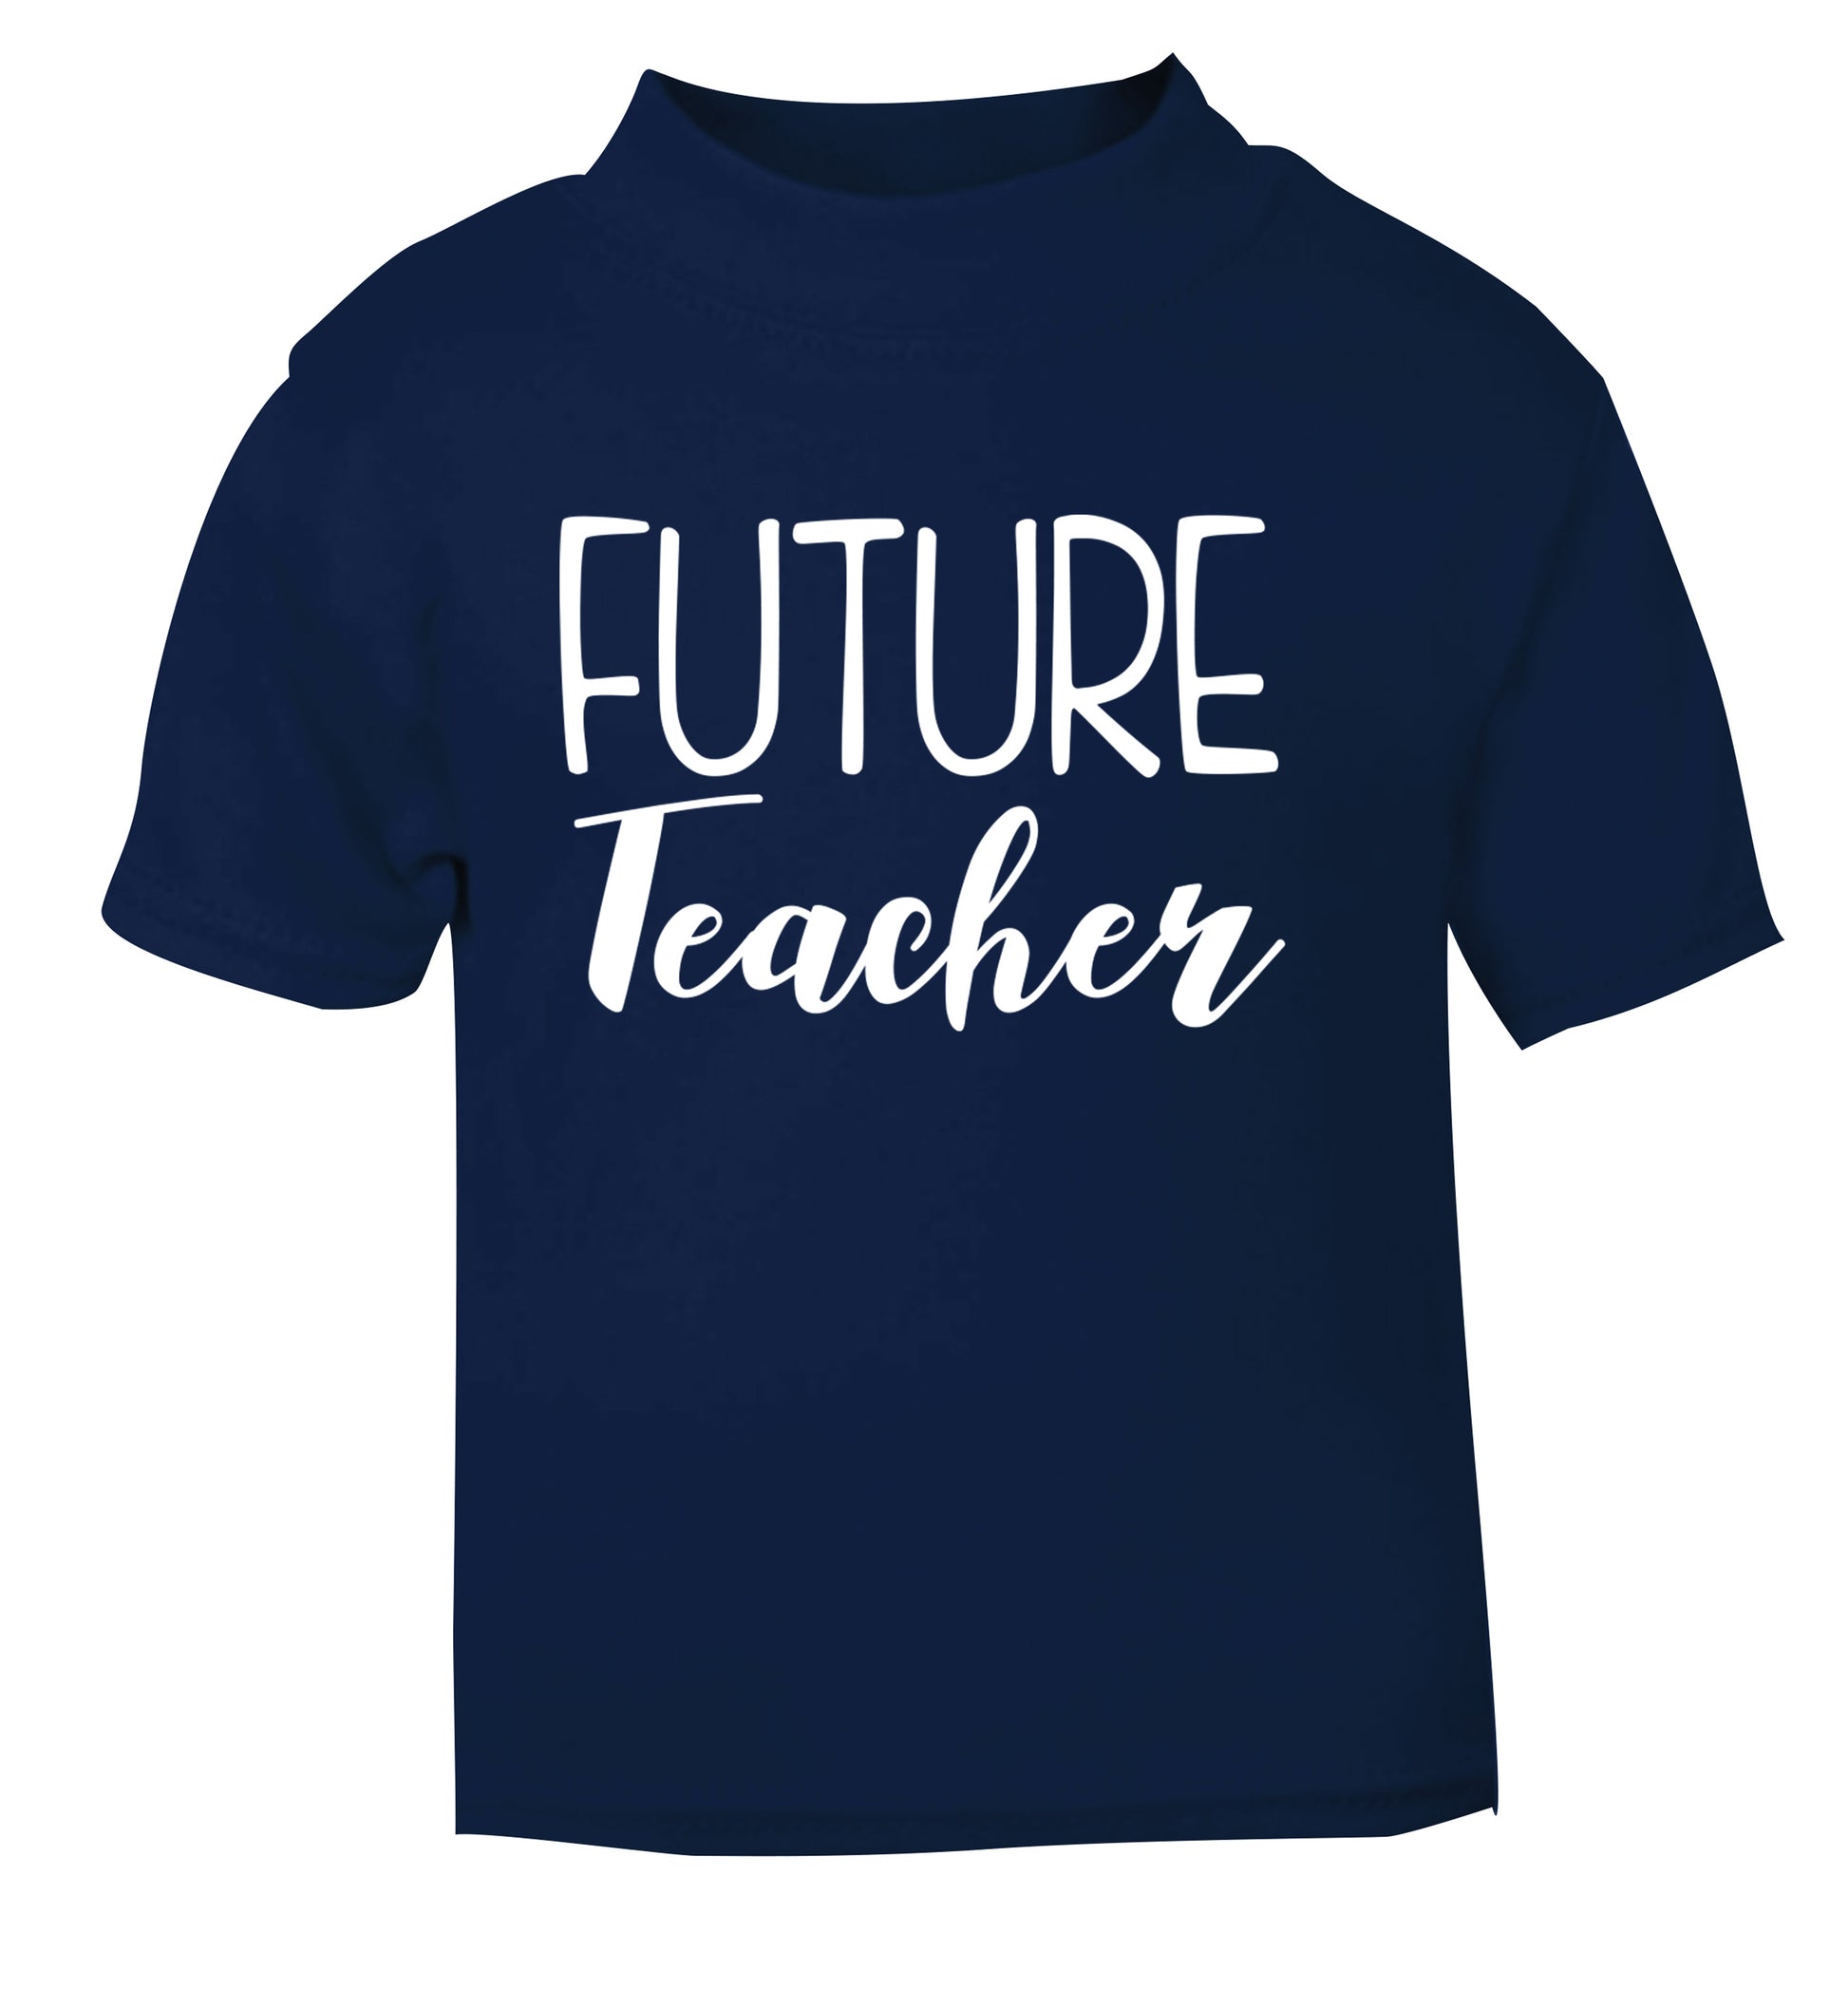 Future teacher navy Baby Toddler Tshirt 2 Years